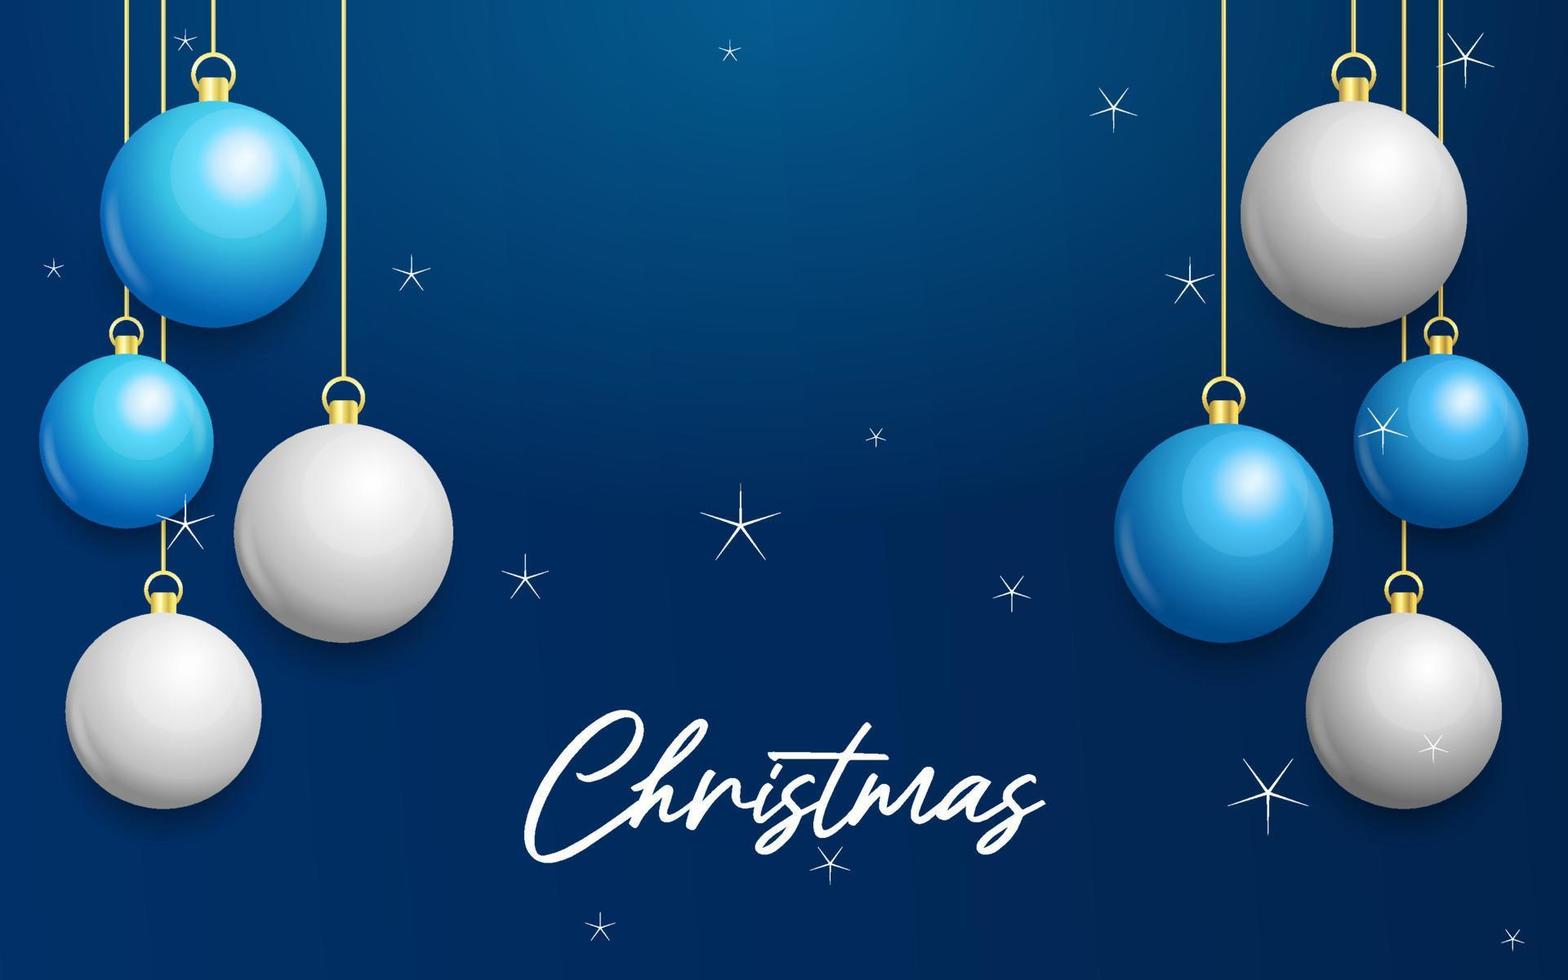 Kerstmis blauw achtergrond met hangende schijnend wit en zilver ballen. vrolijk Kerstmis groet kaart vector